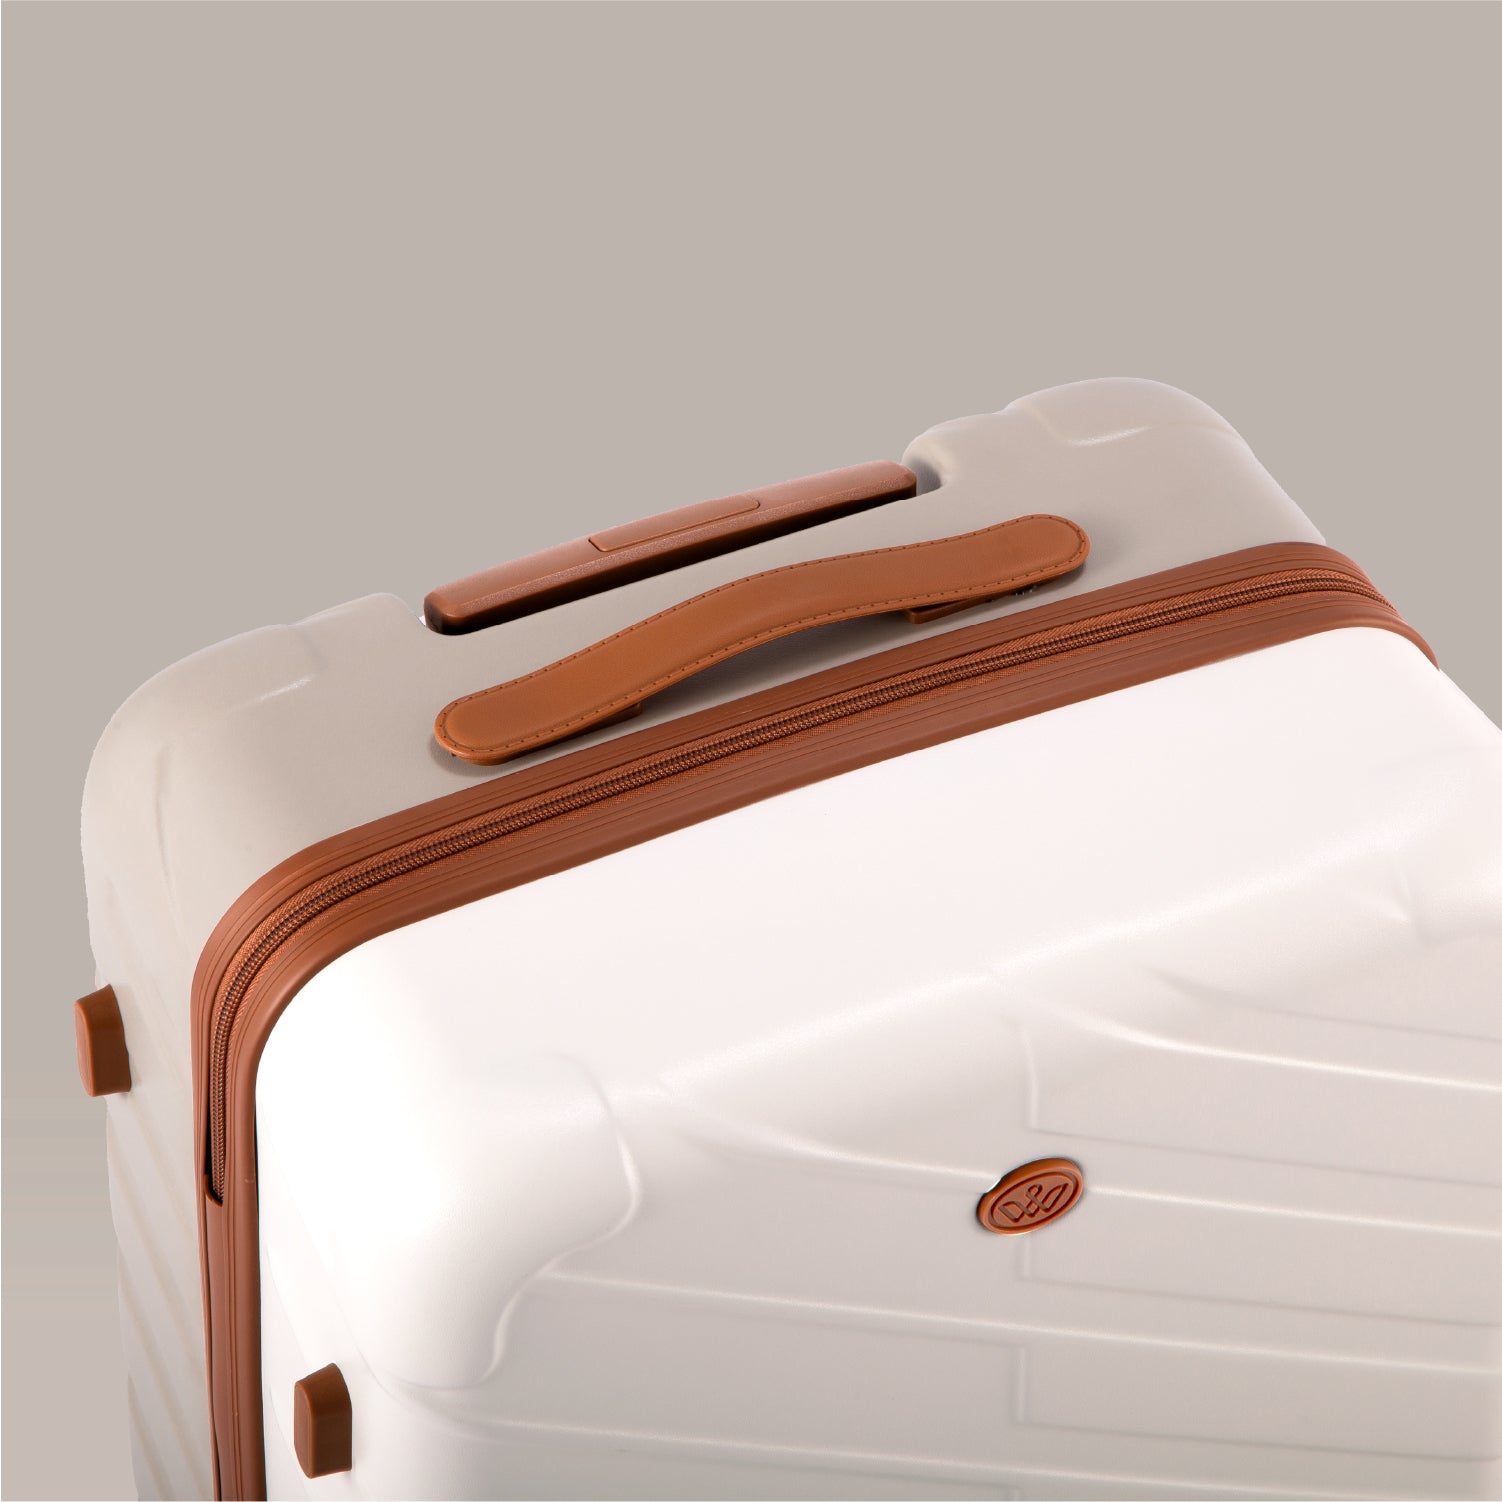 PIANOⅡ スーツケース ホワイトサンド Mサイズ